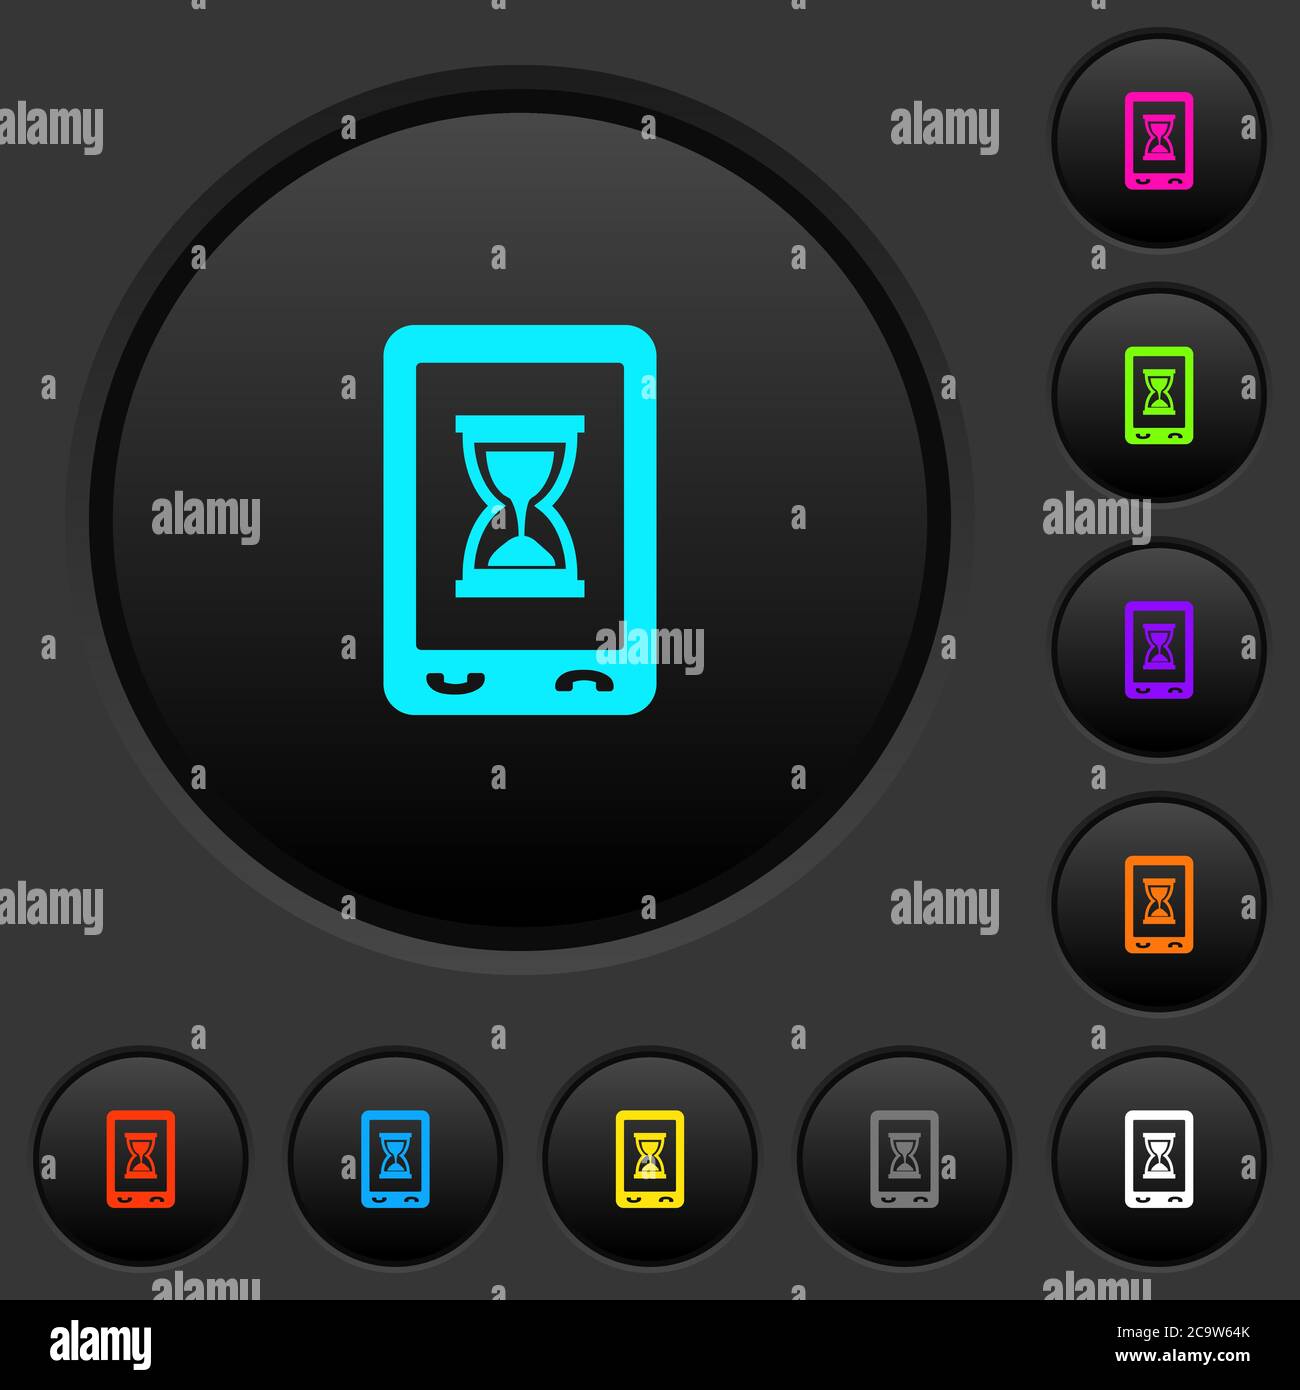 Botones pulsadores oscuros de trabajo móvil con iconos de colores vivos sobre fondo gris oscuro Ilustración del Vector